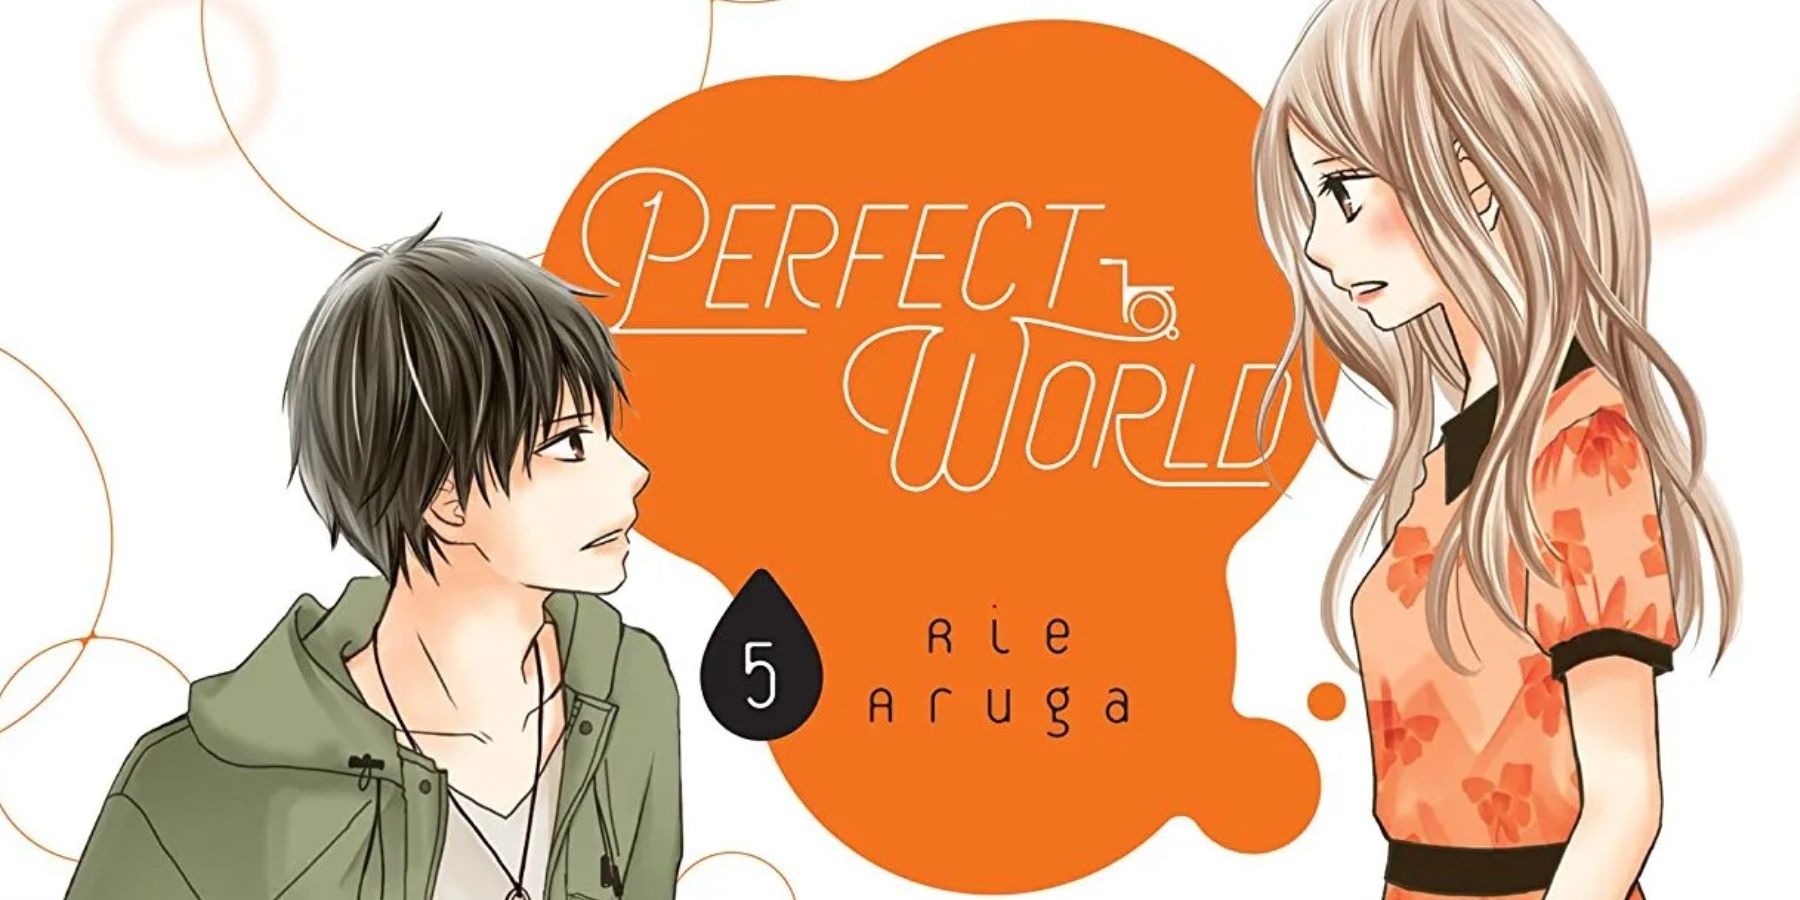 Perfect World manga